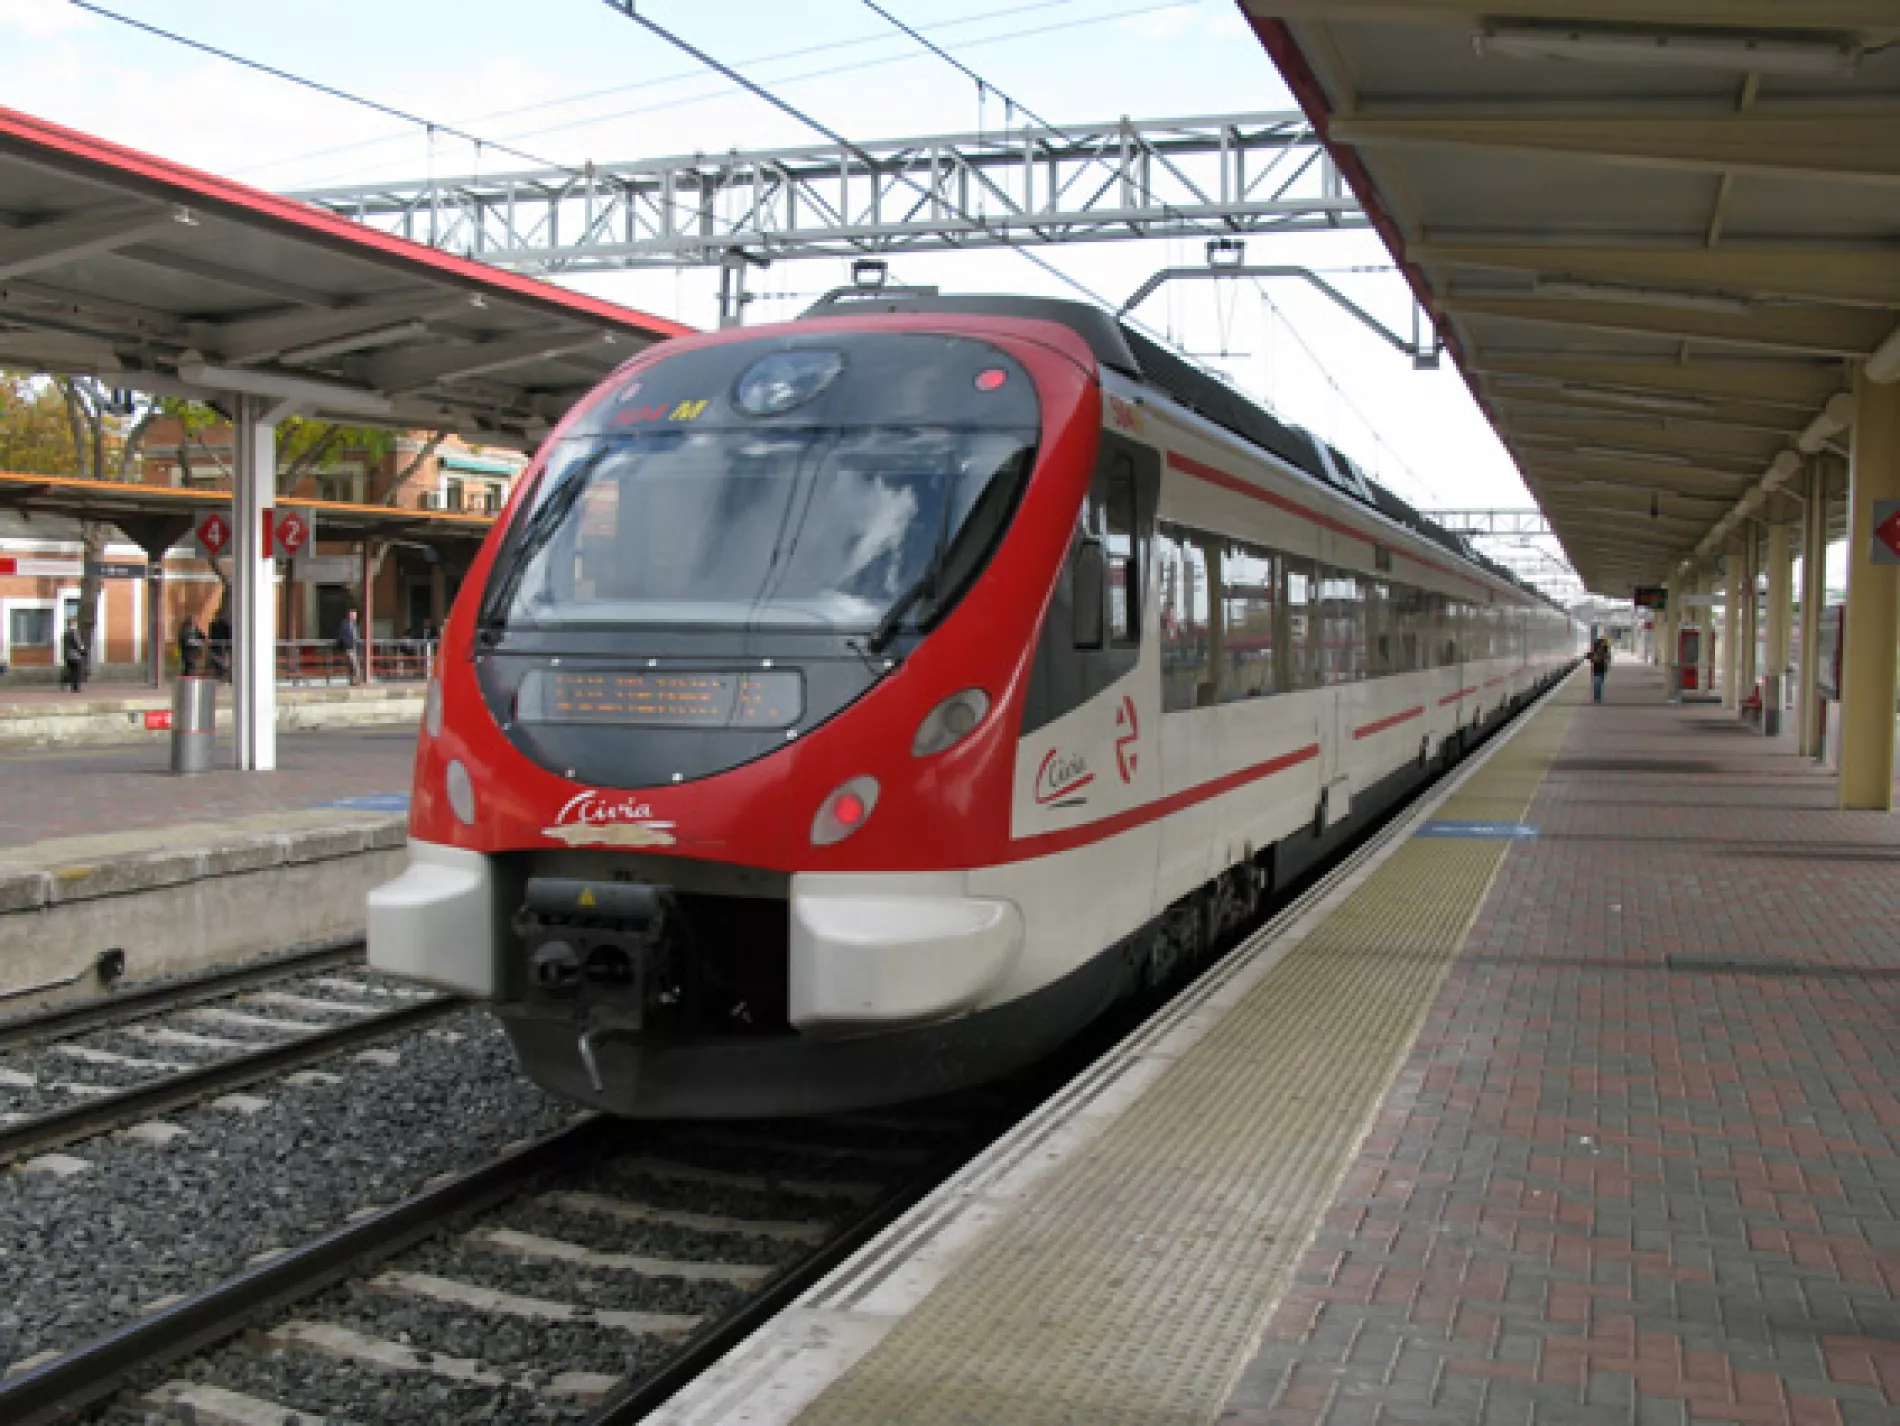 Starosta Vajnor žiada o opakované zavedenie vlakovej linky ako mestskej hromadnej dopravy.